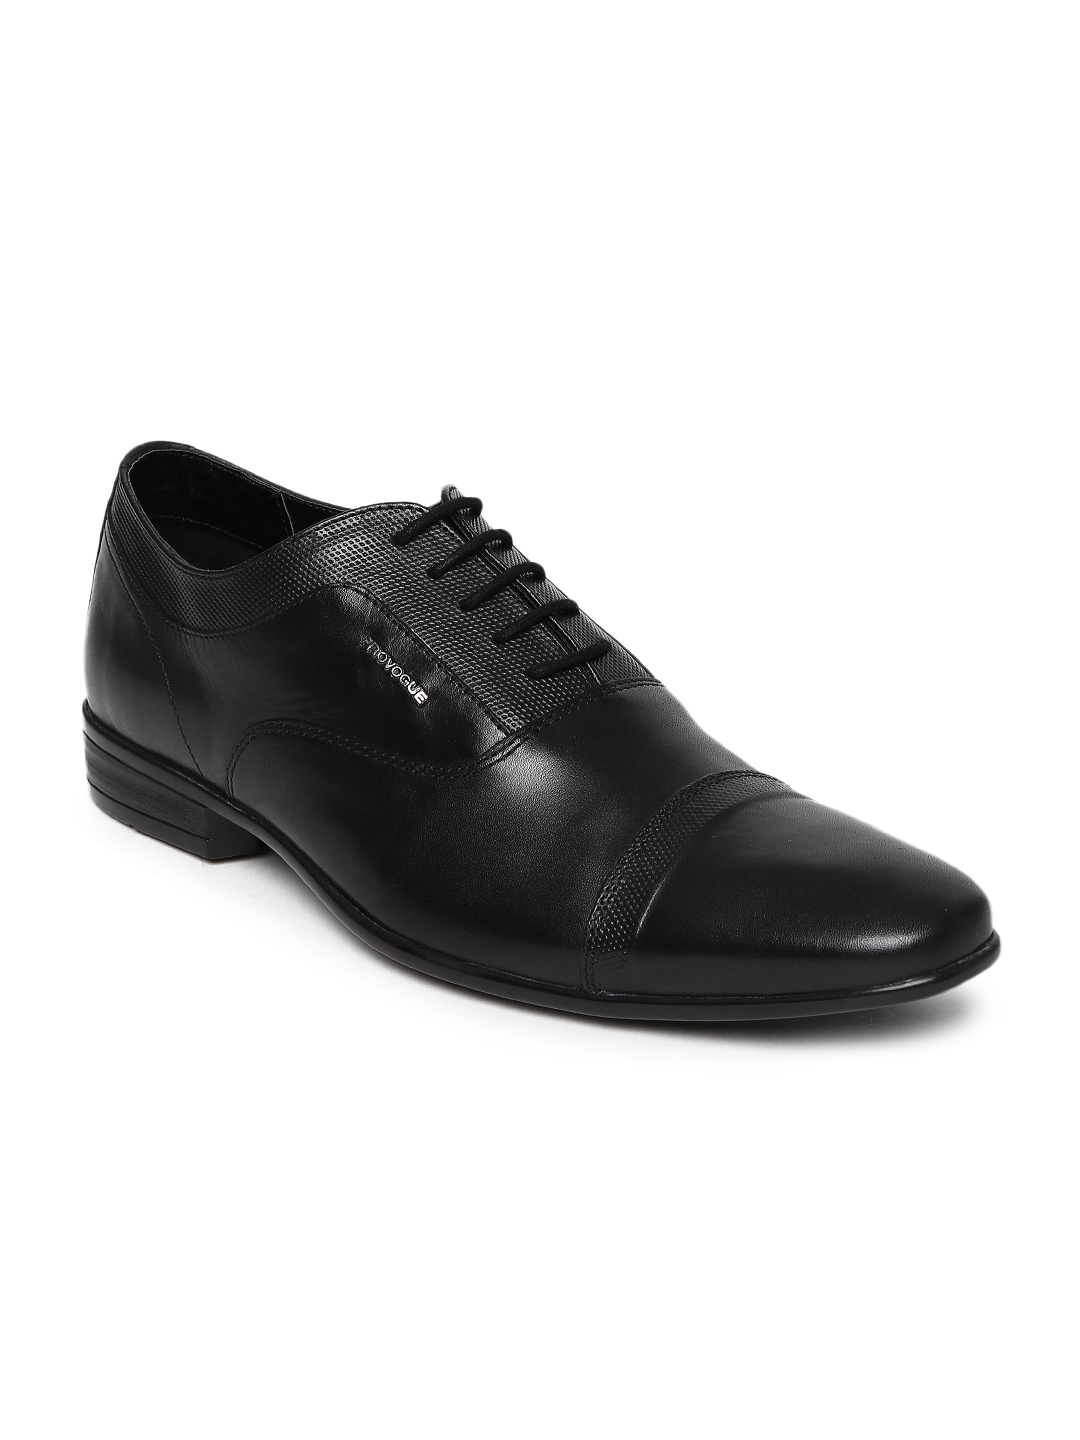 provogue shoes for men